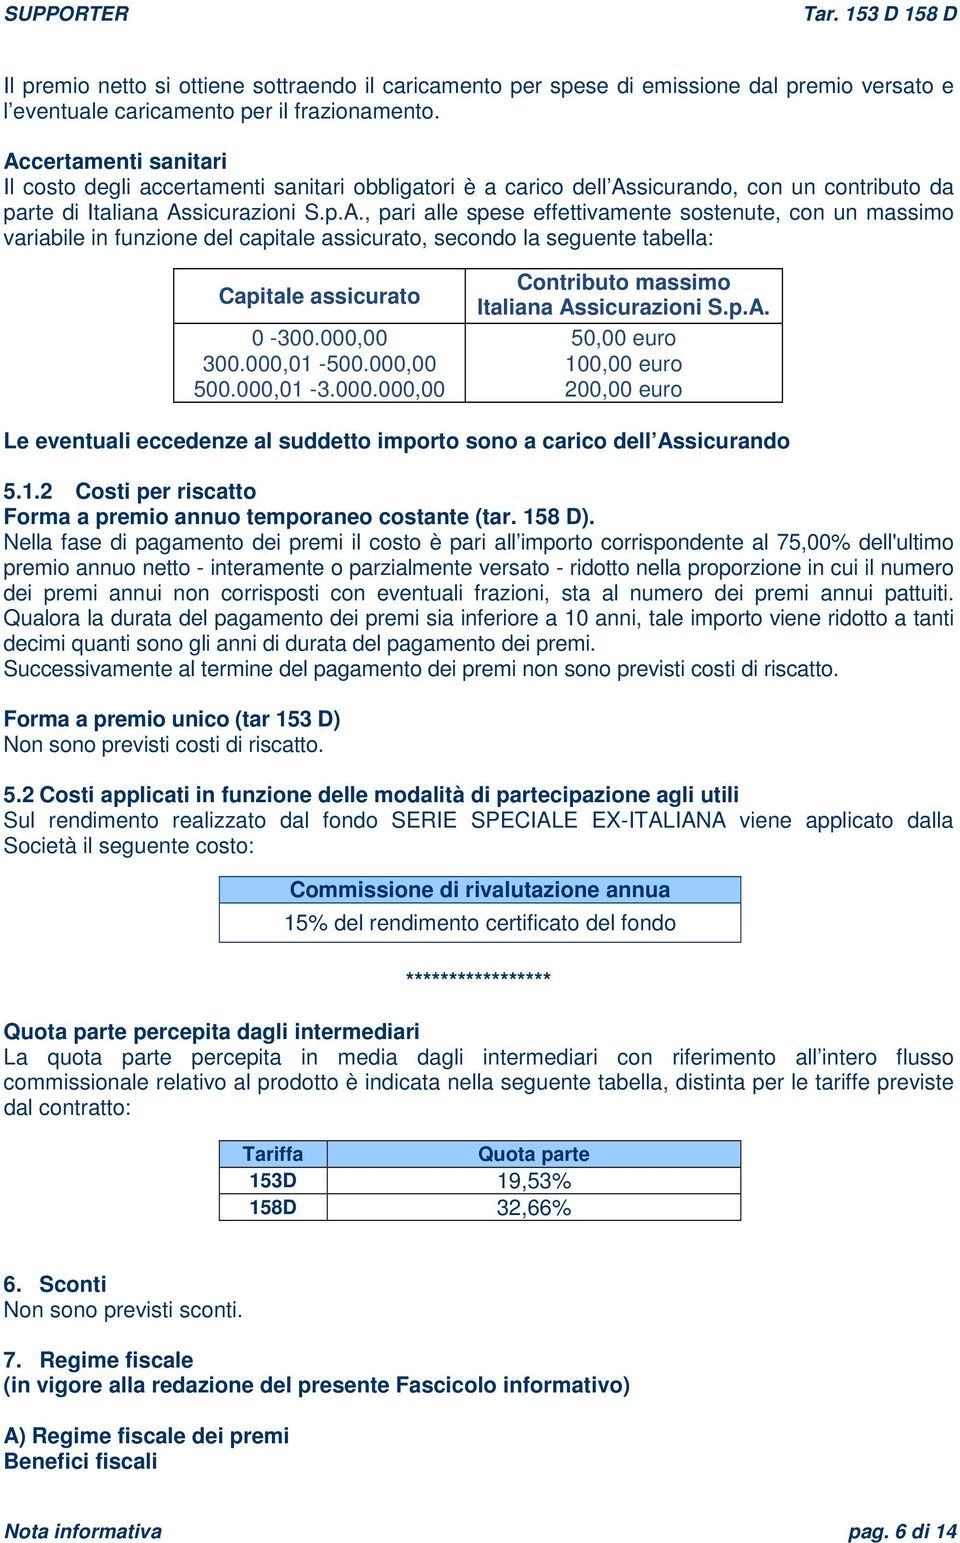 sostenute, con un massimo variabile in funzione del capitale assicurato, secondo la seguente tabella: Capitale assicurato Contributo massimo Italiana Assicurazioni S.p.A. 0-300.000,00 50,00 euro 300.